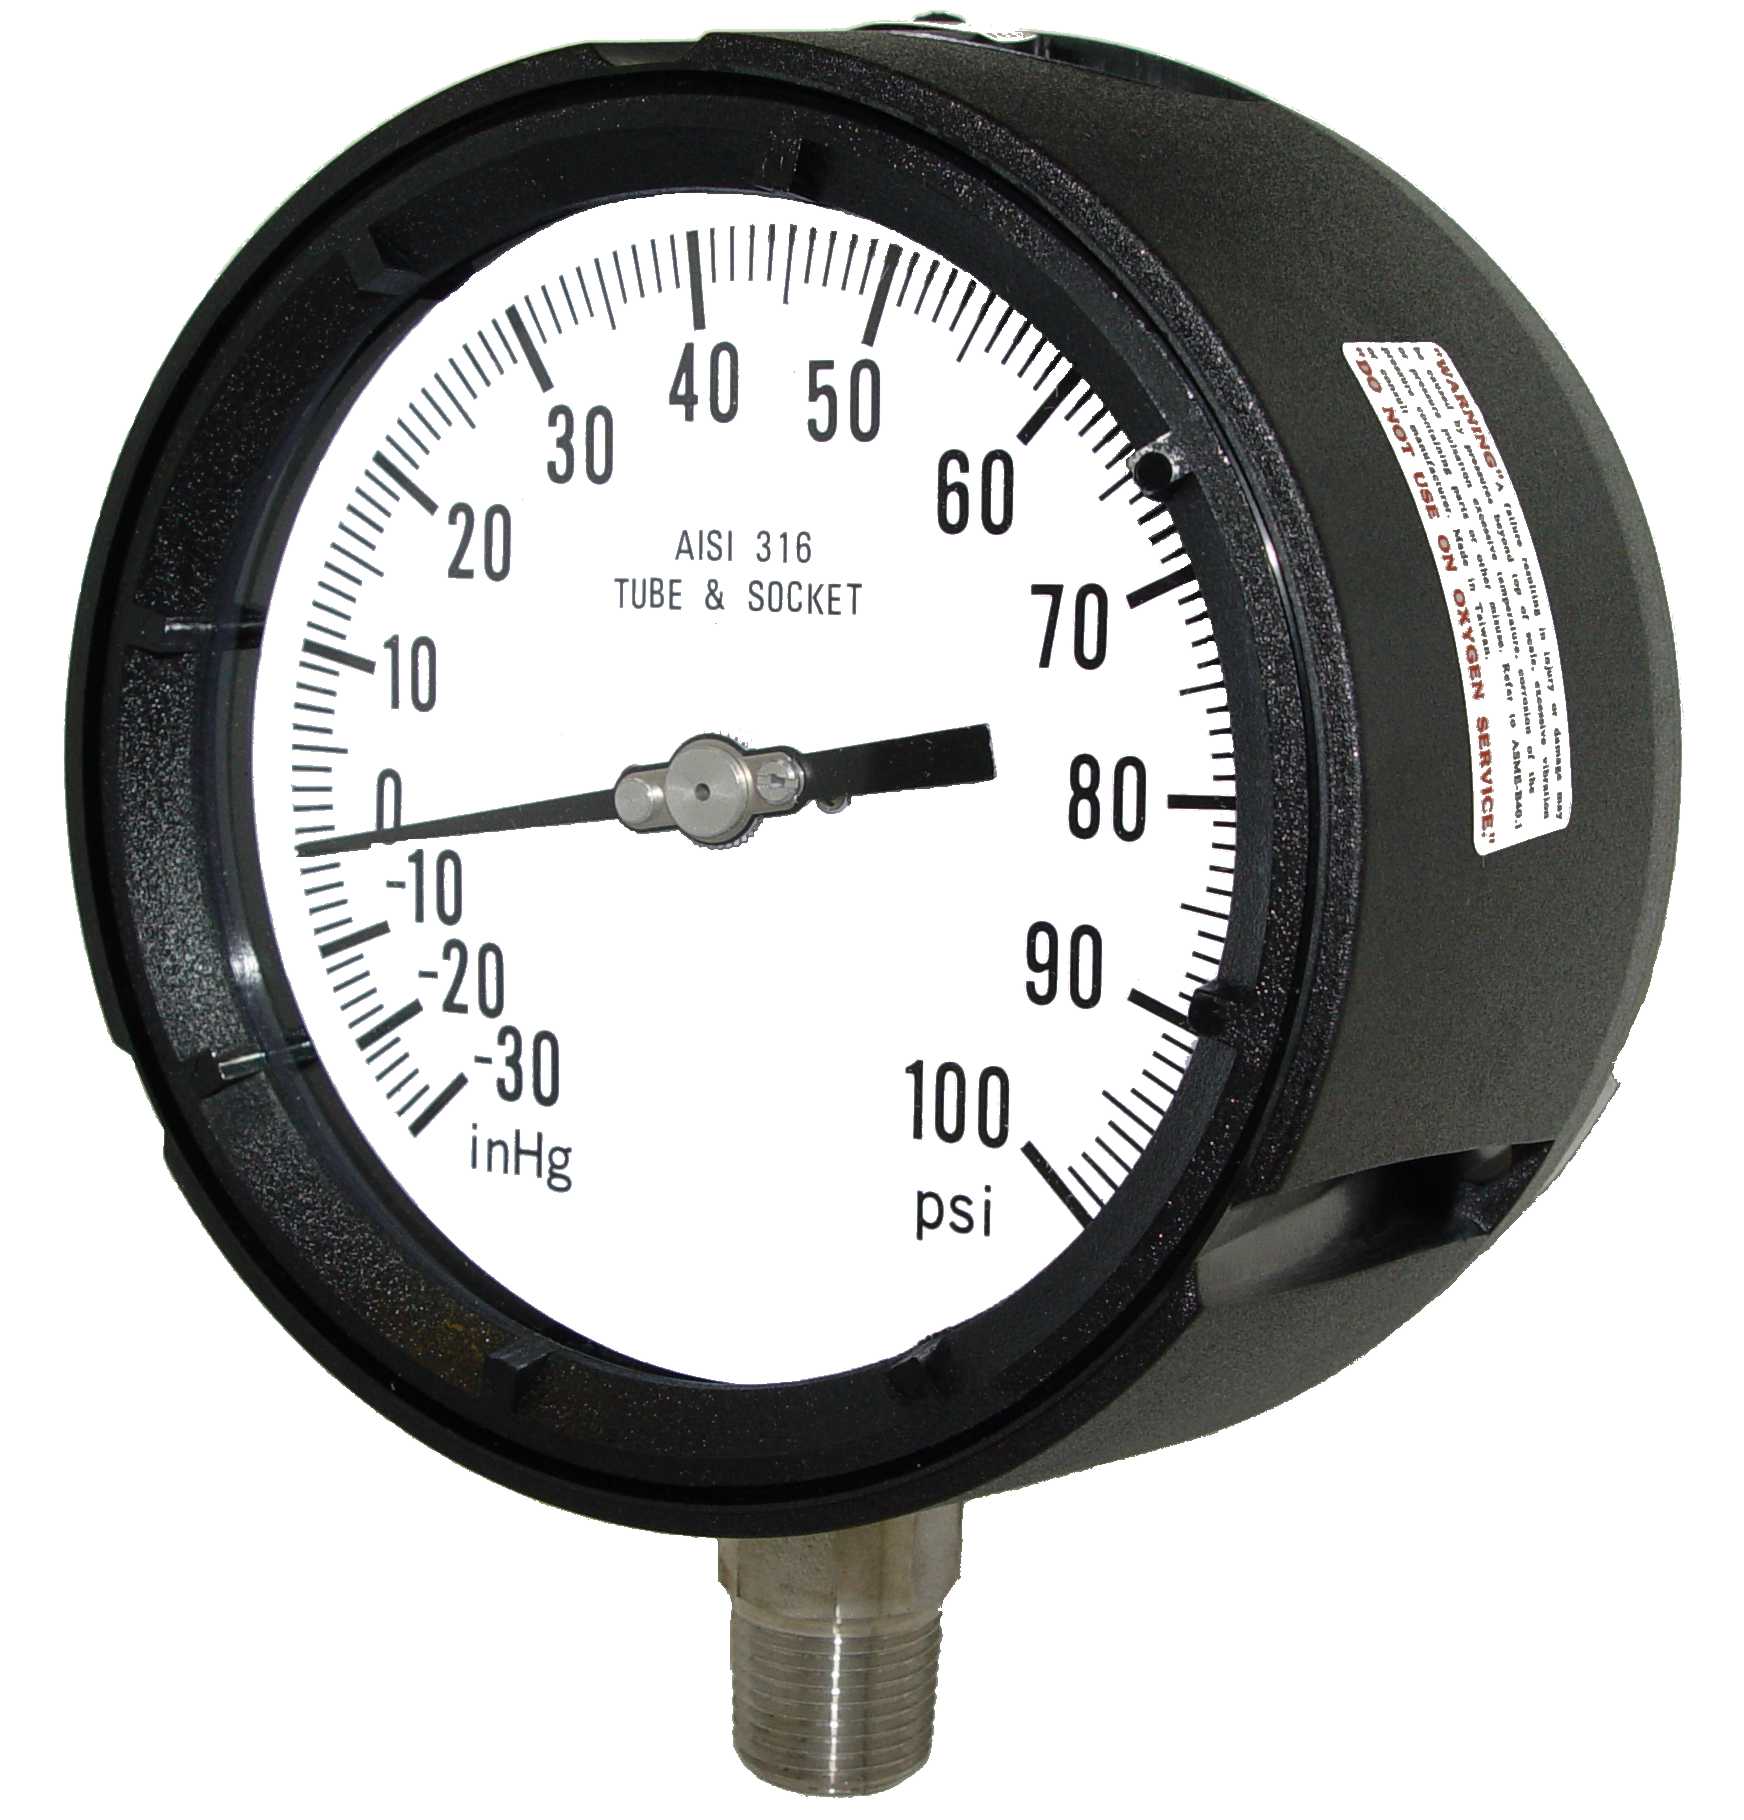 Model 4501-454CD gauge, 4.5 dial, 1/4 mount, 30-0-60